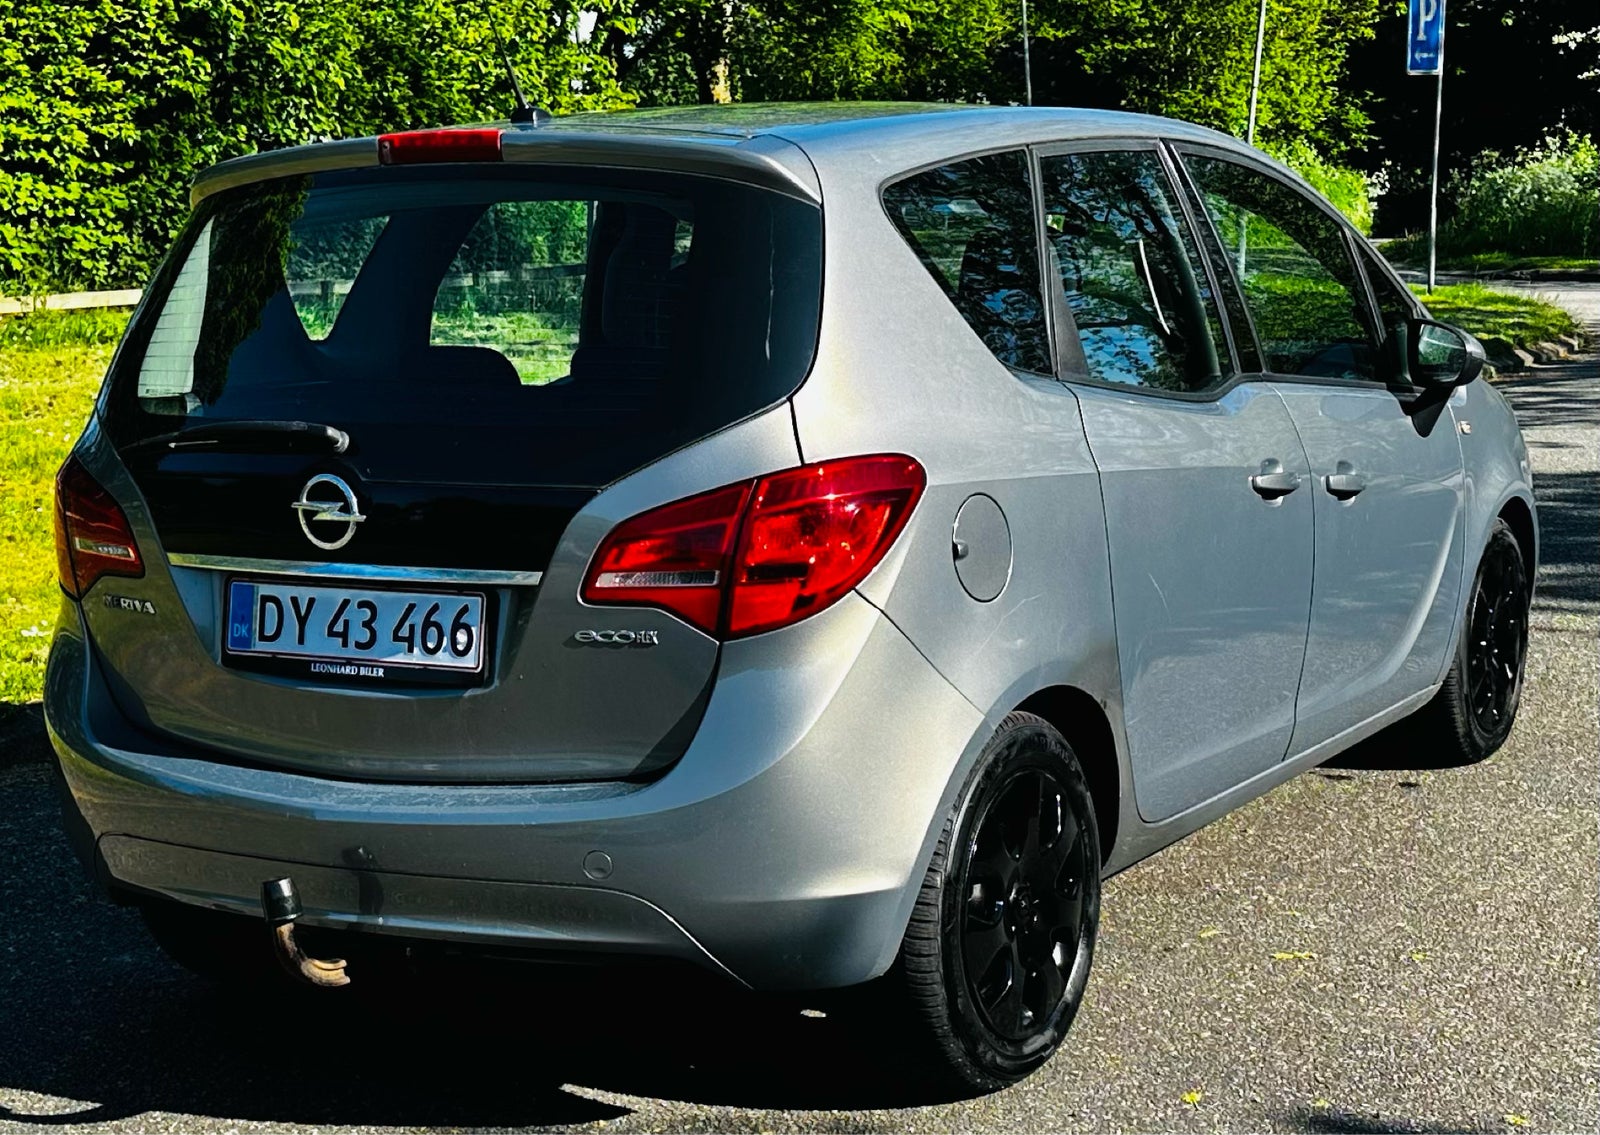 Opel Meriva, 1,3 CDTi 95 Cosmo eco, Diesel